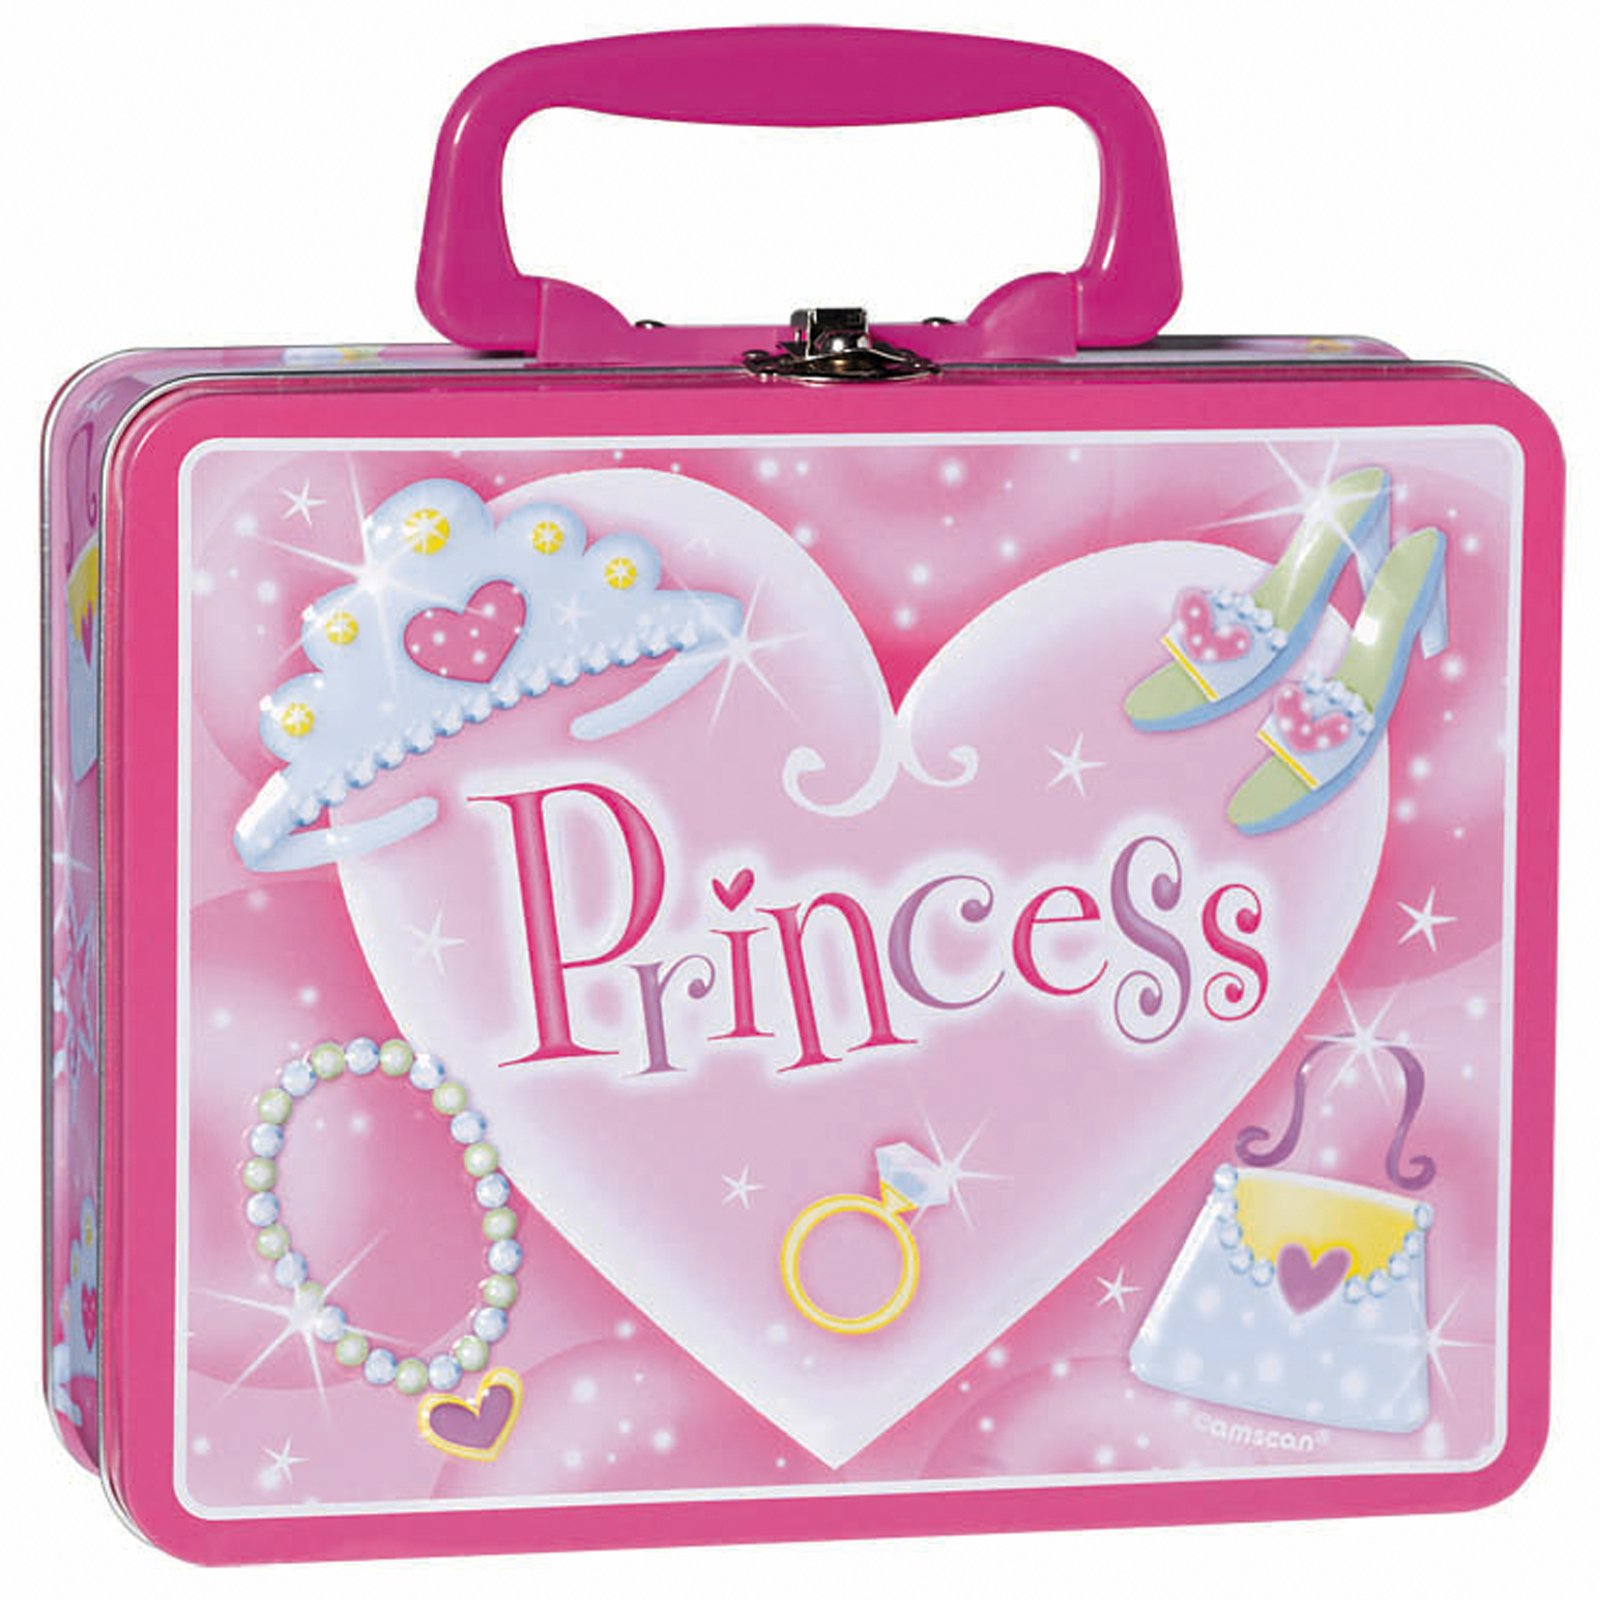 Princess Tin Box Carry All